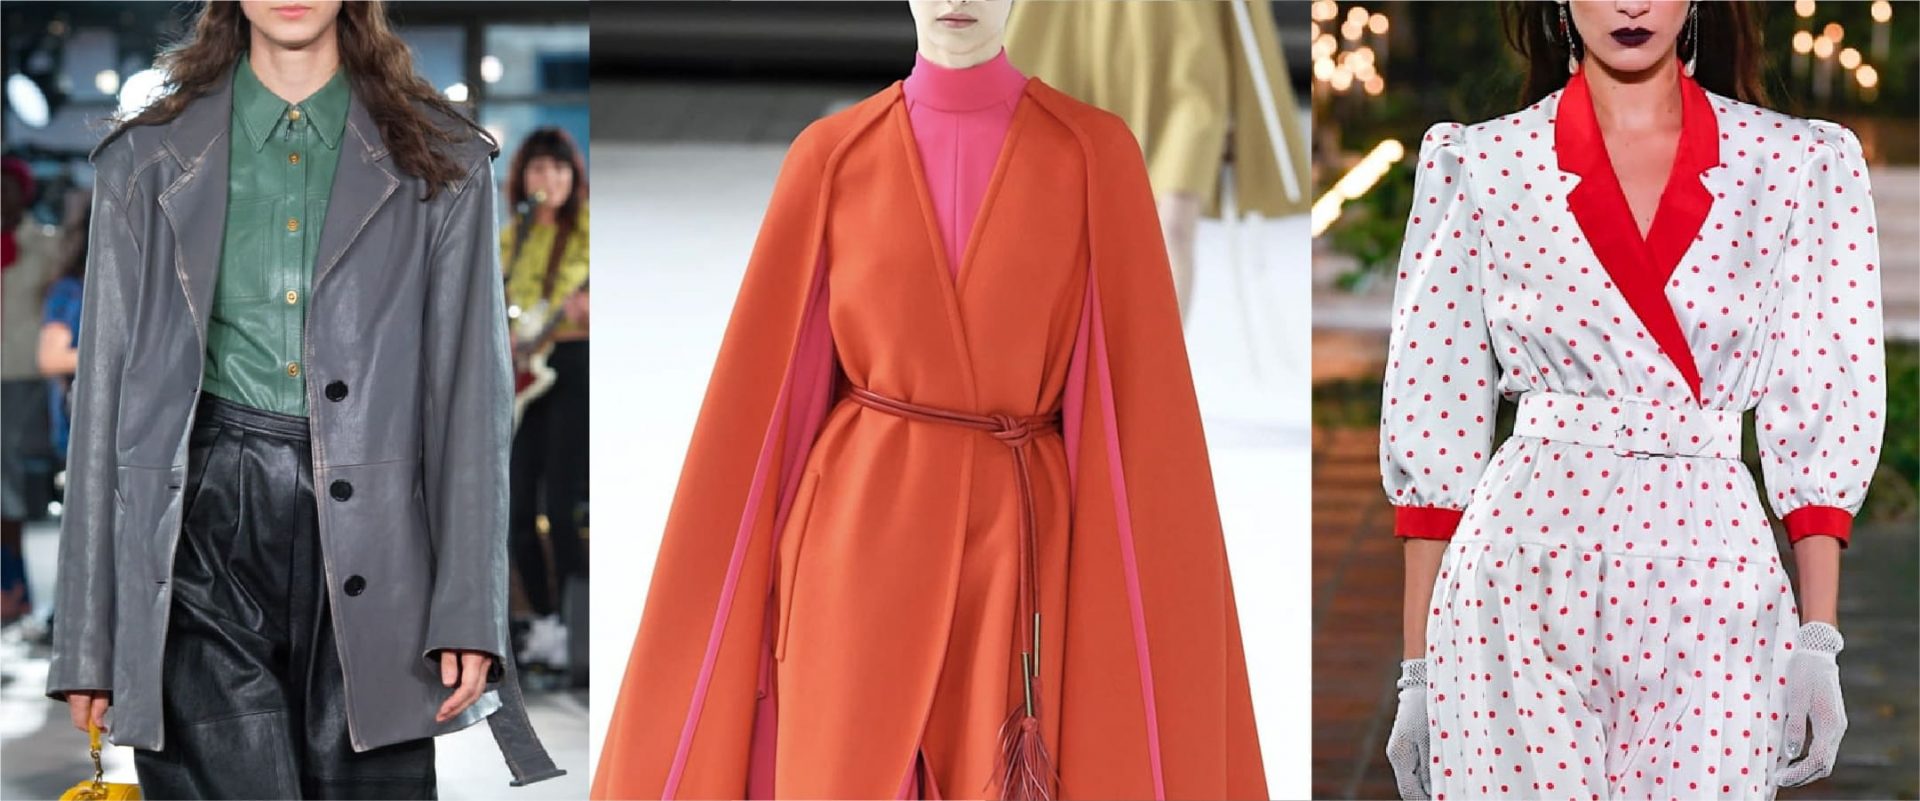 NY Fashion week : on vous annonce déjà les tendances automne-hiver 2020-2021